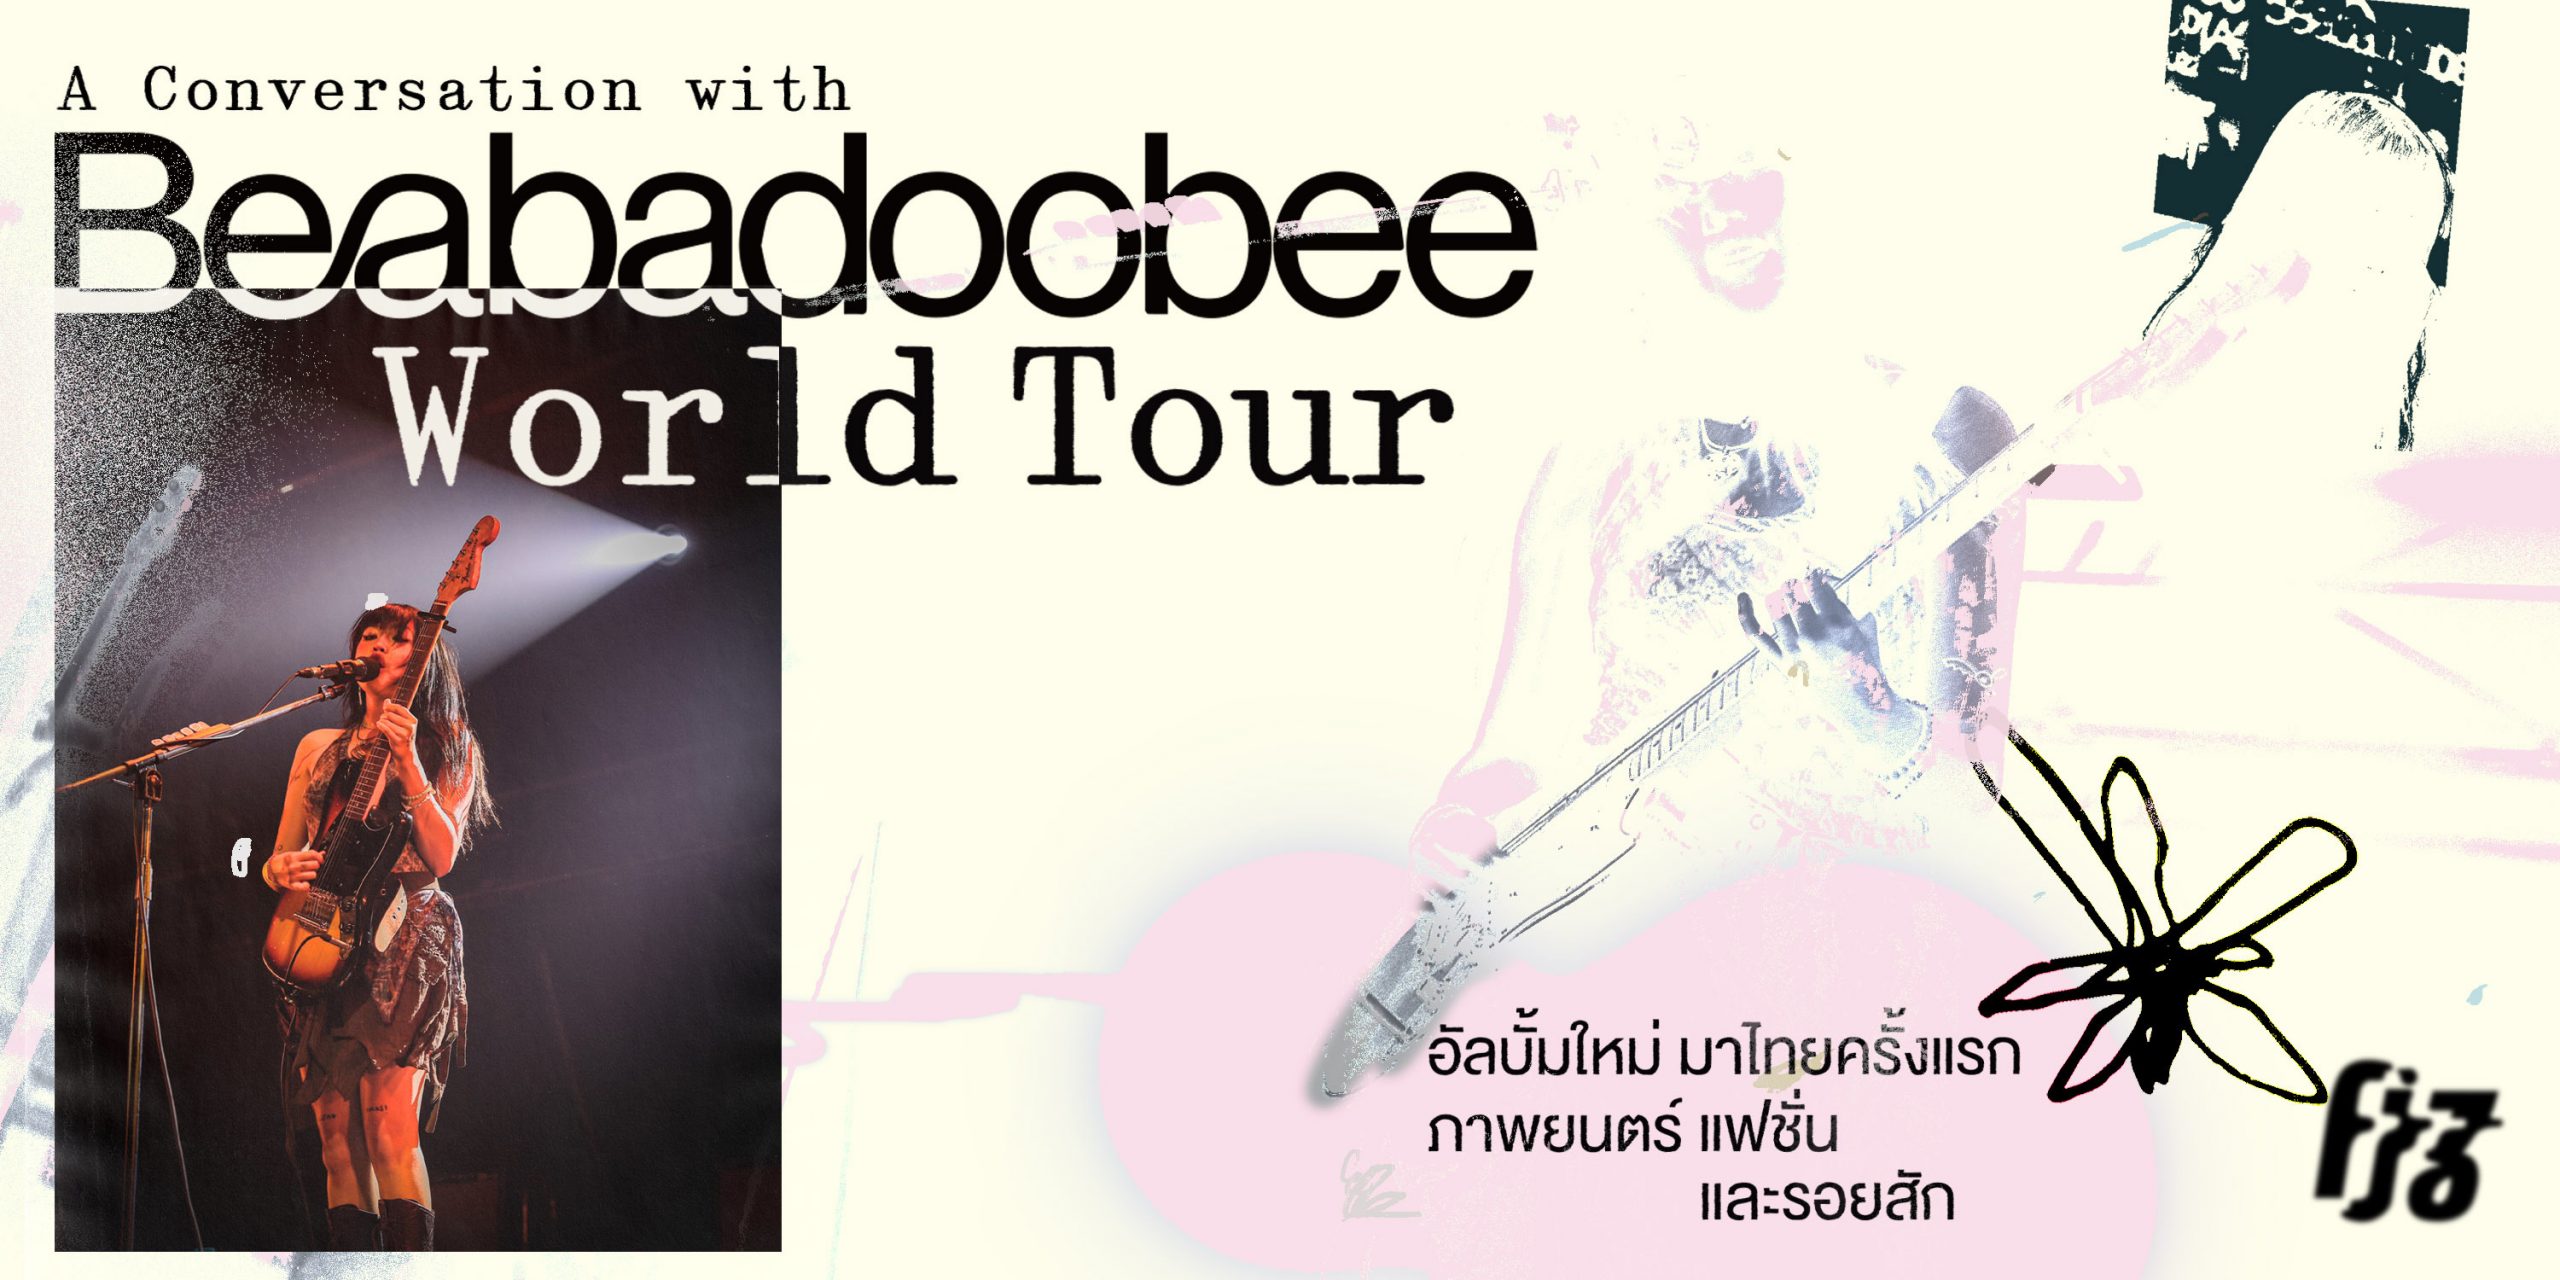 คุยกับ beabadoobee “World Tour อัลบั้มใหม่ มาไทยครั้งแรก ภาพยนตร์ แฟชั่น และรอยสัก”